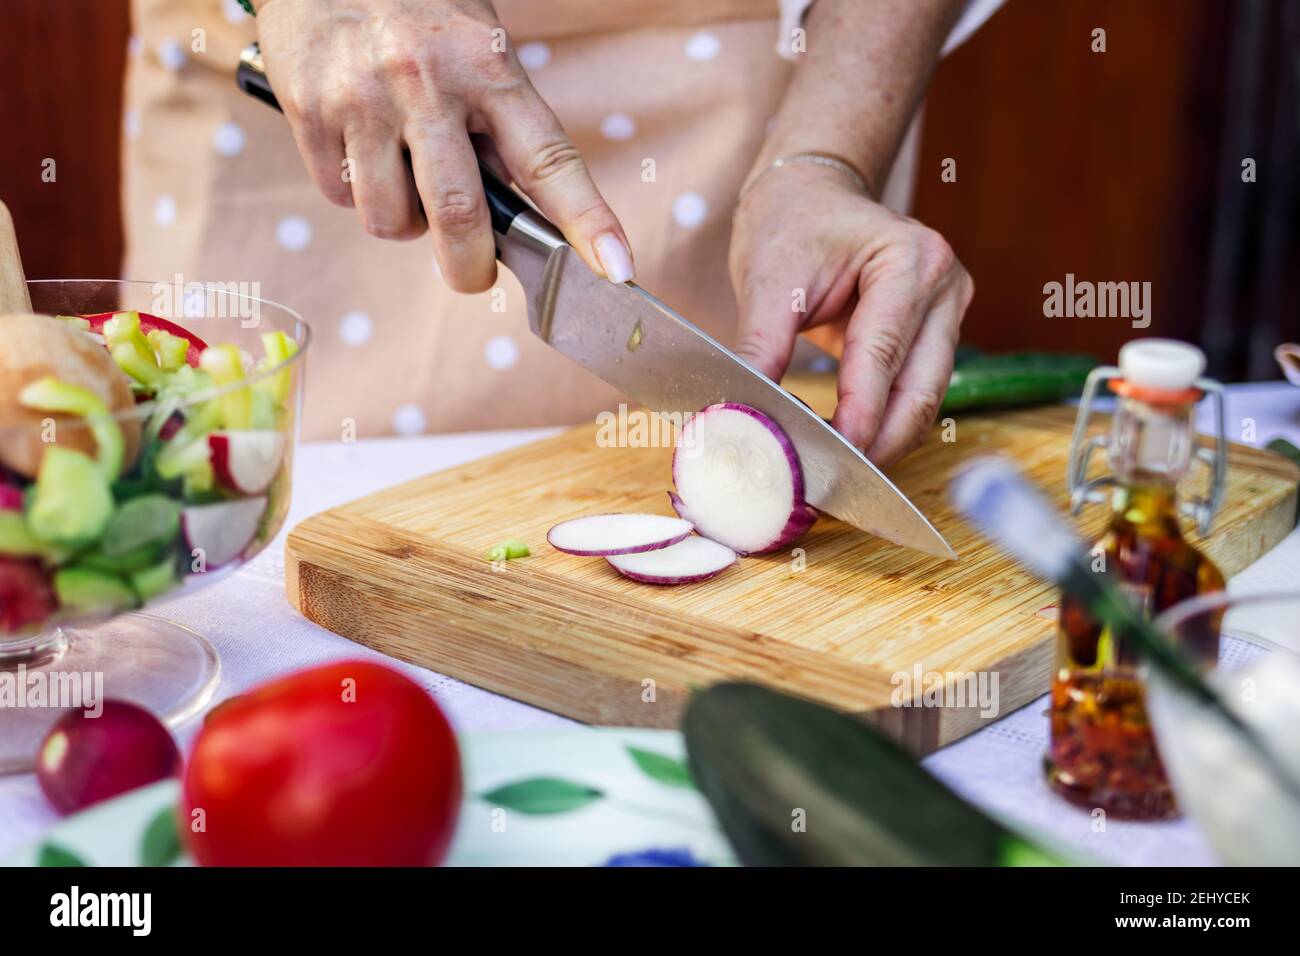 Femme coupant l'oignon rouge avec un couteau de cuisine sur une planche en bois. Préparation des aliments. Légumes en gros plan à la main Banque D'Images